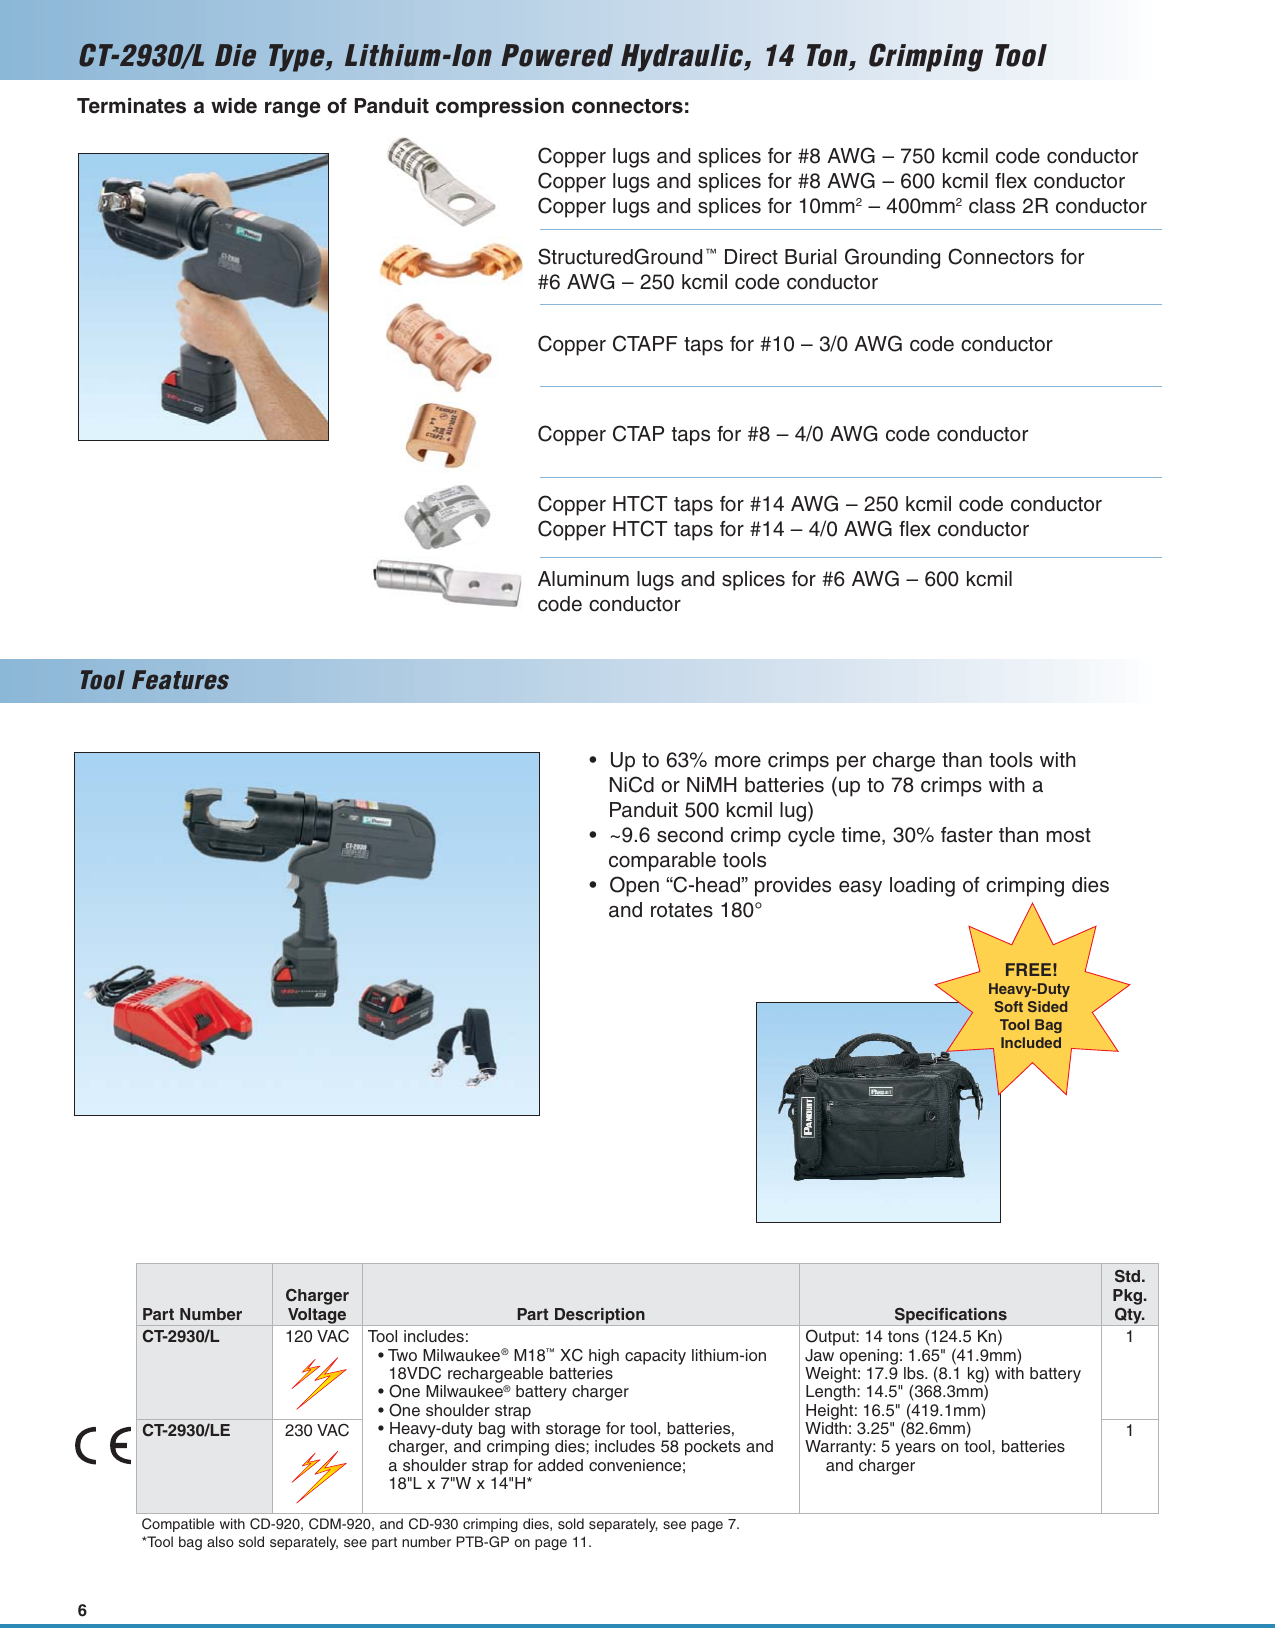 Page 6 of 12 - SA-PCCB12 (Lithium-Ion Powered Crimping Tools).qxp